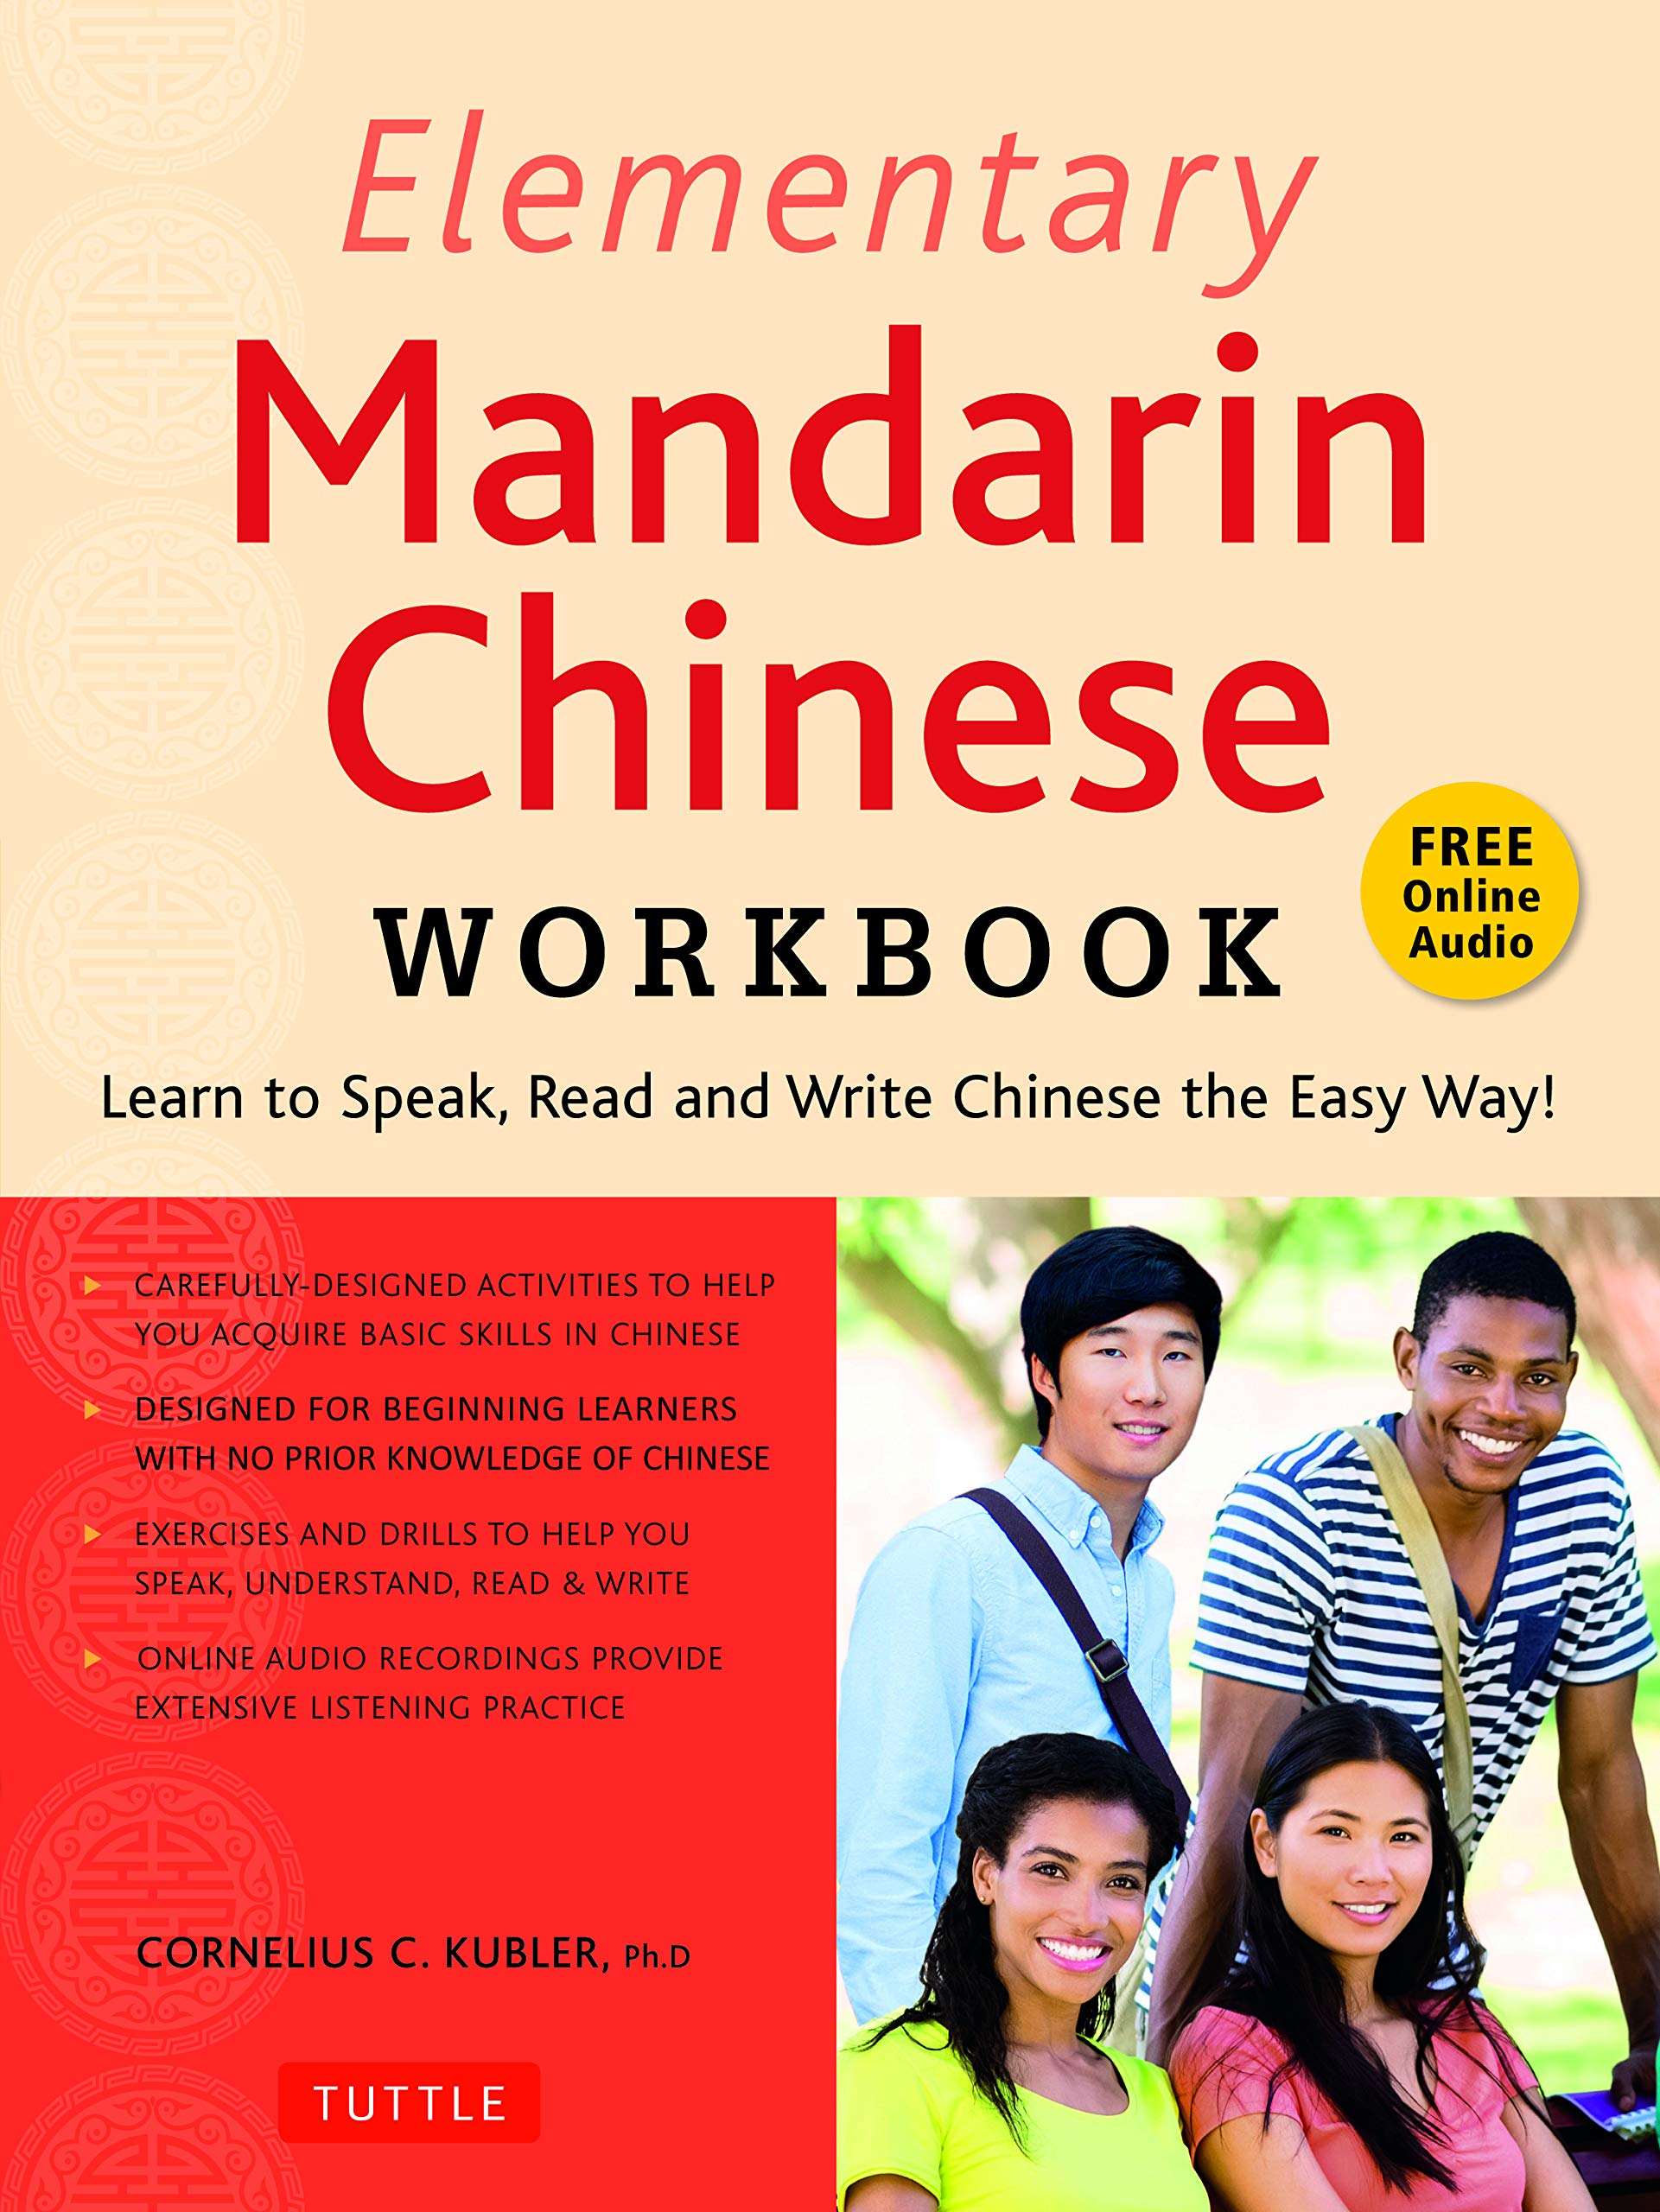 Elementary Mandarin Chinese Workbook | Cornelius C. Kubler